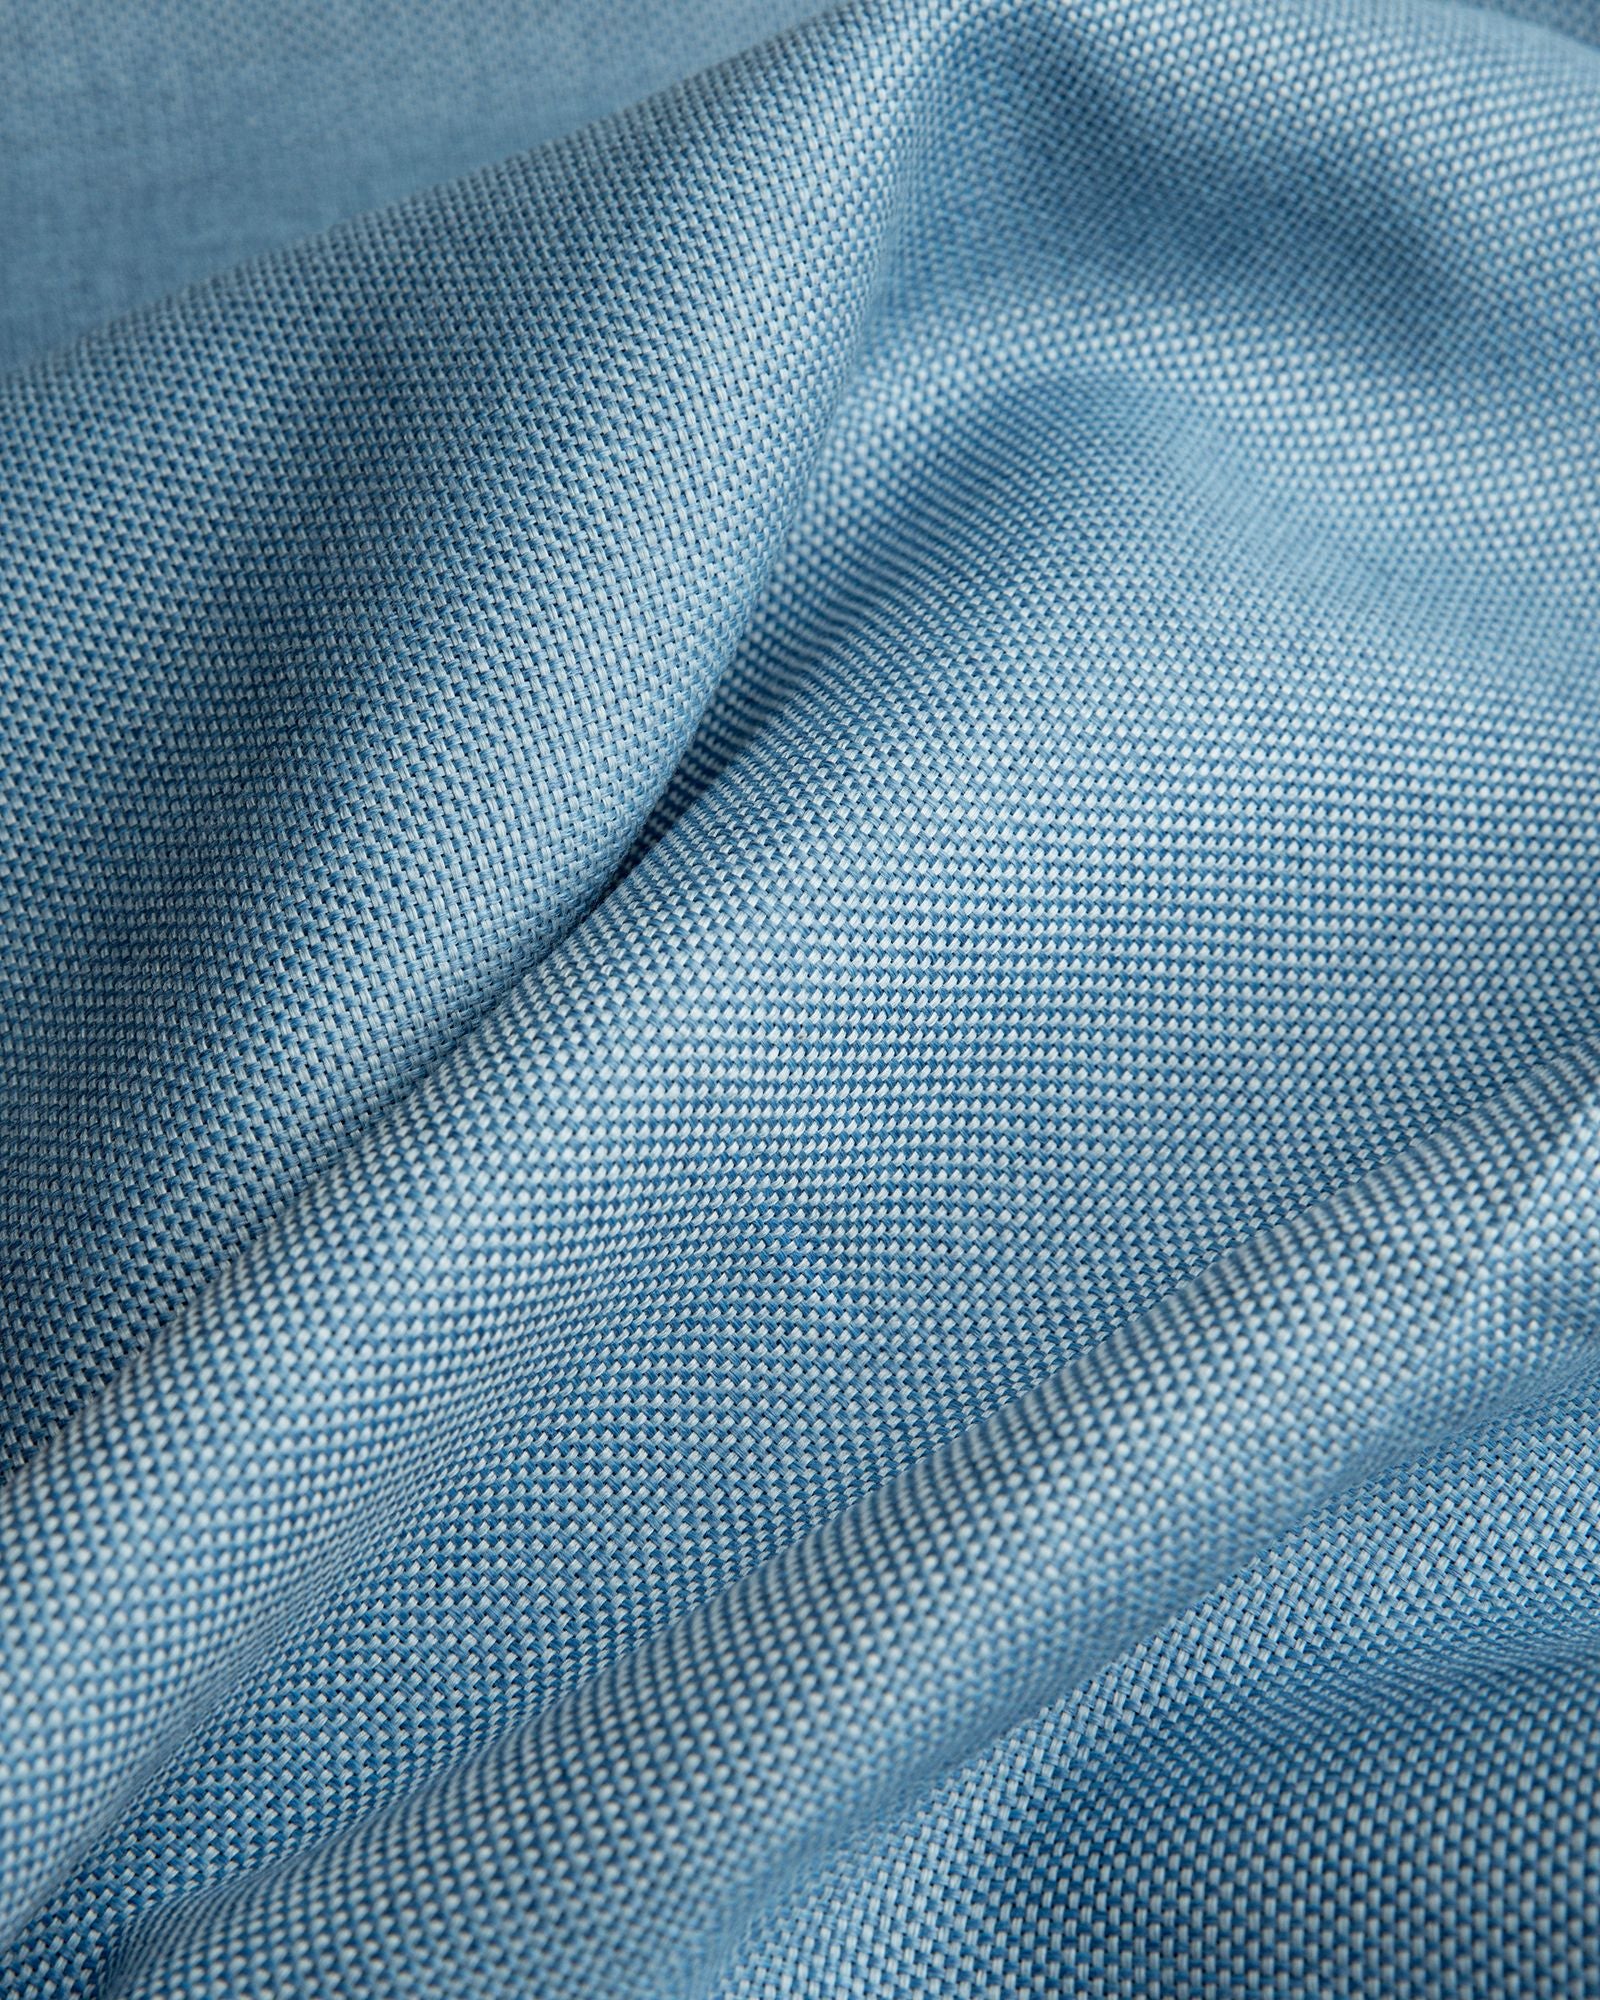 Größe: 130x 220 cm Farbe: hellblau #farbe_hellblau